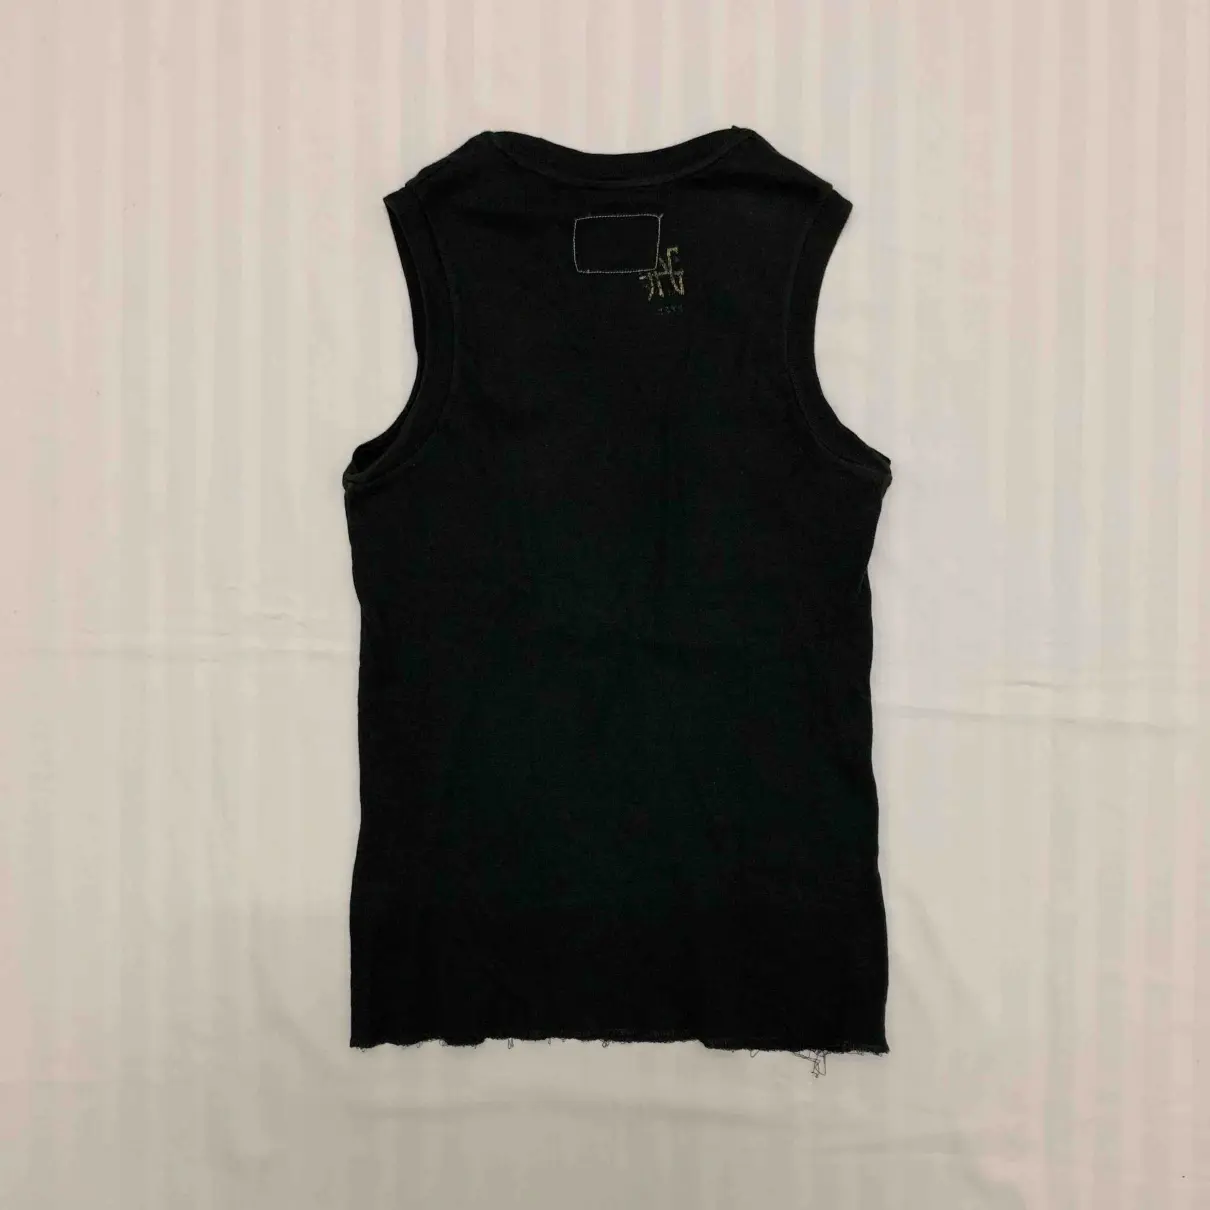 Buy Jean Paul Gaultier Black Cotton T-shirt online - Vintage